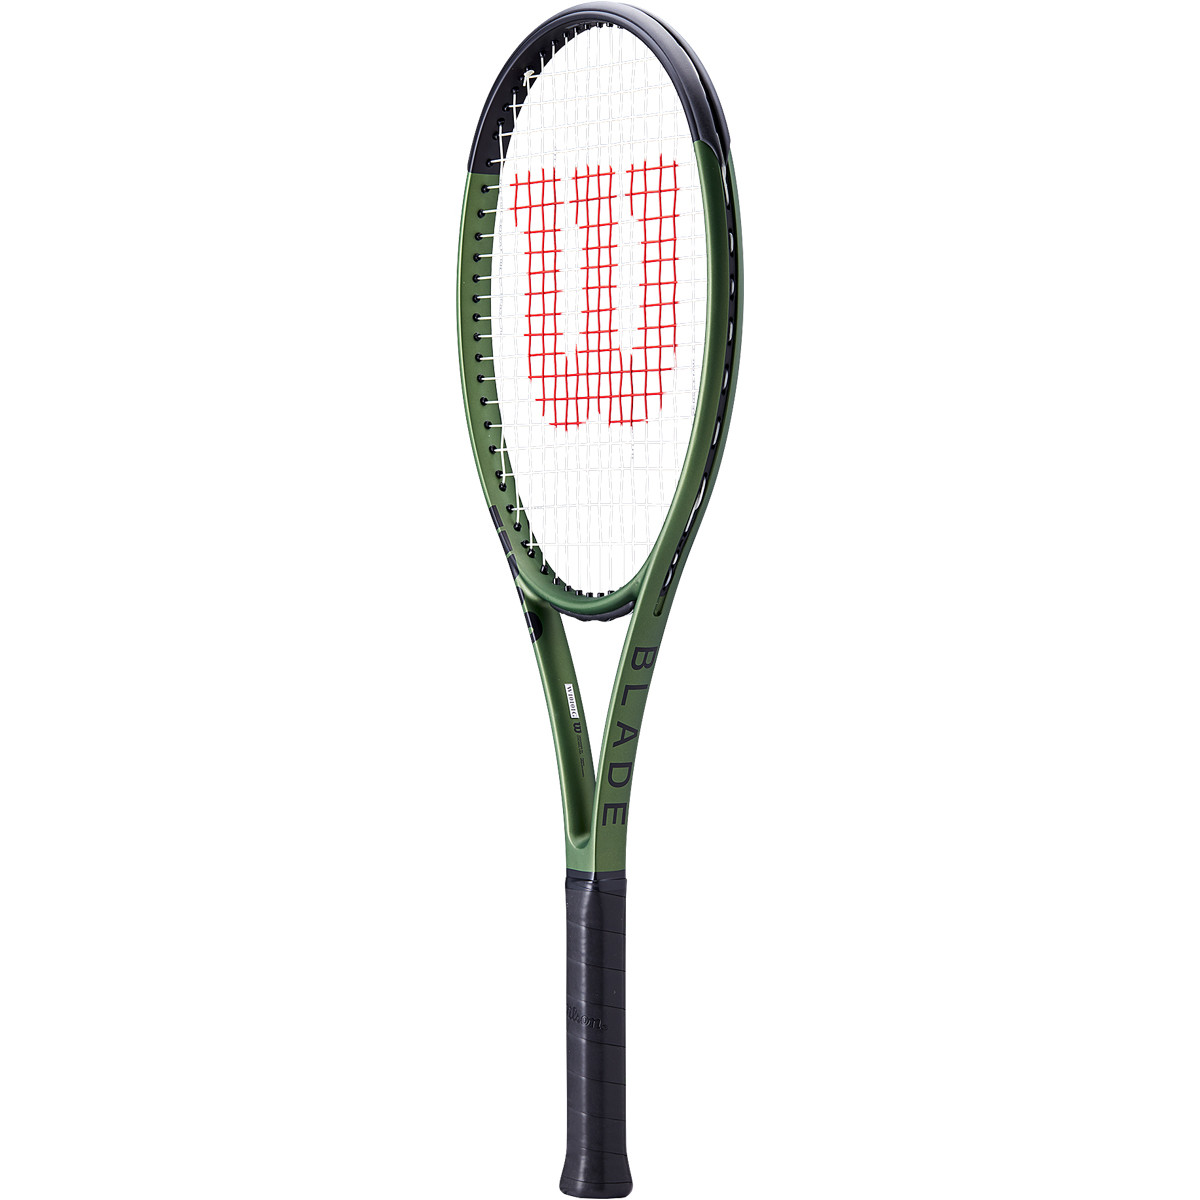 WILSON BLADE 101 L V8.0 RACQUET (274 GR) - WILSON - Adult Racquets